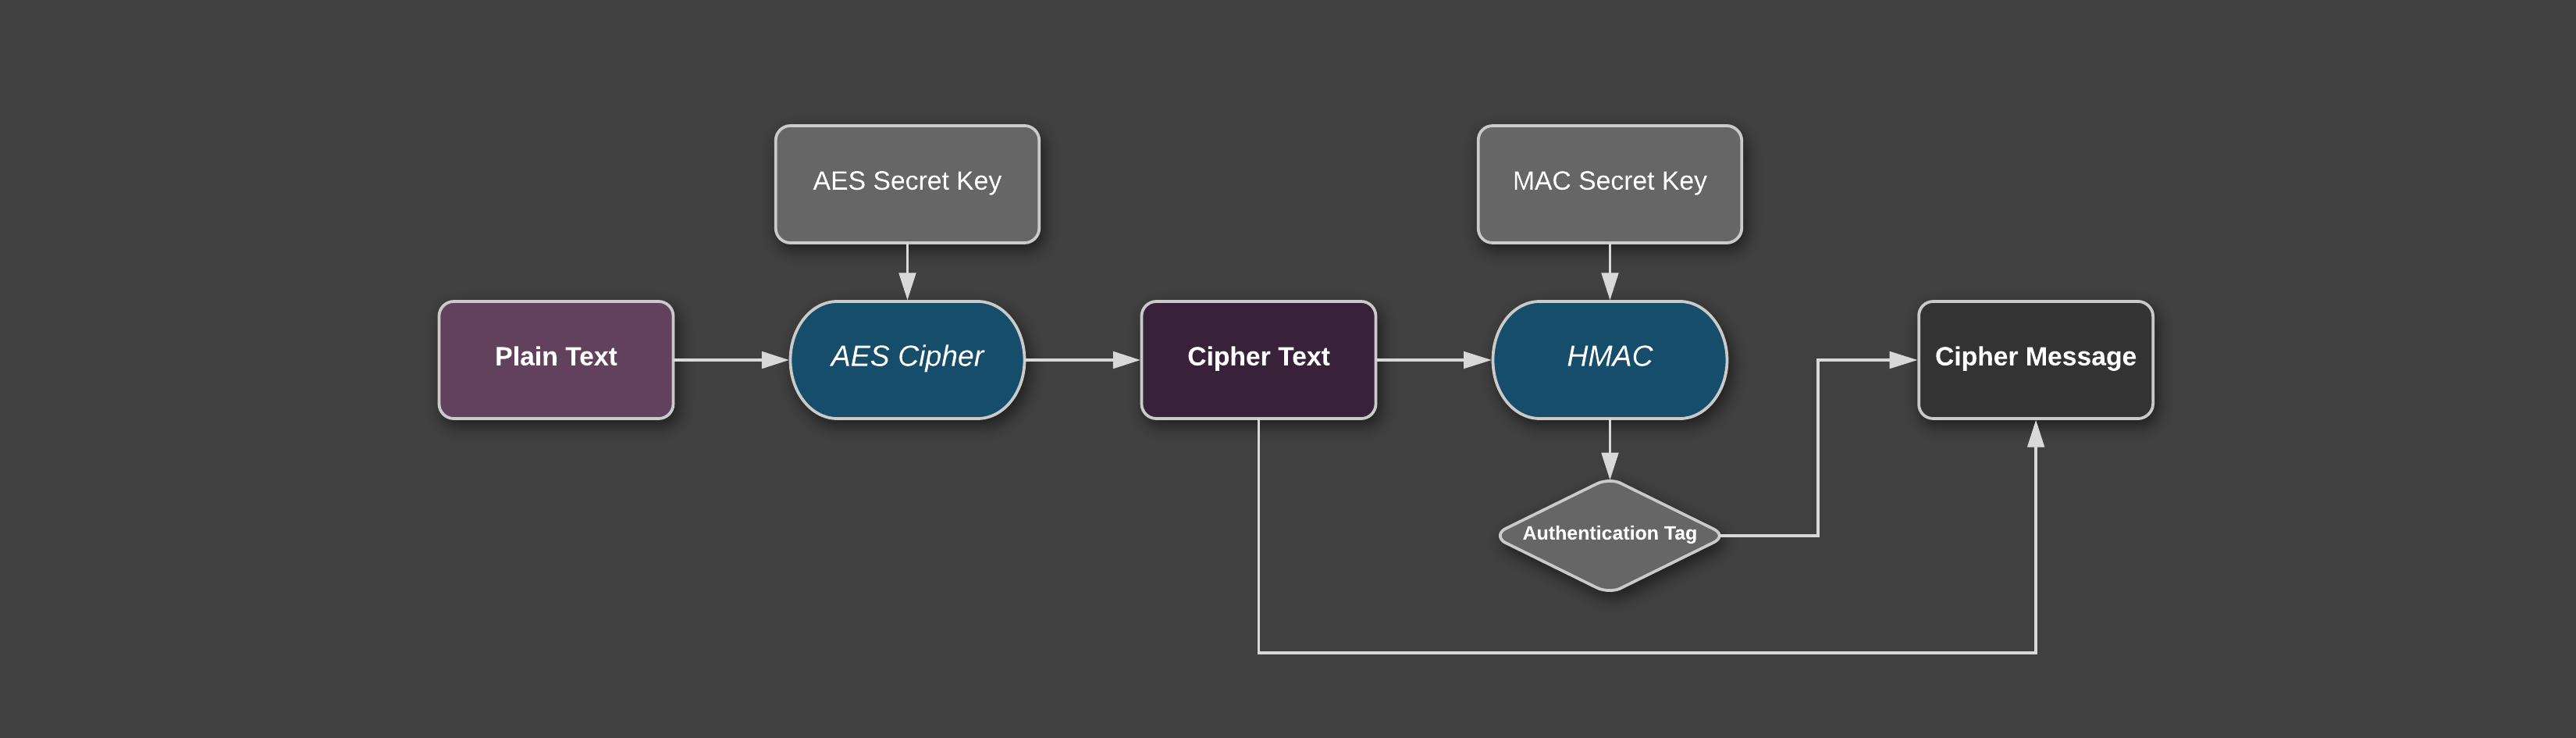 Encrypt-then-Mac schema